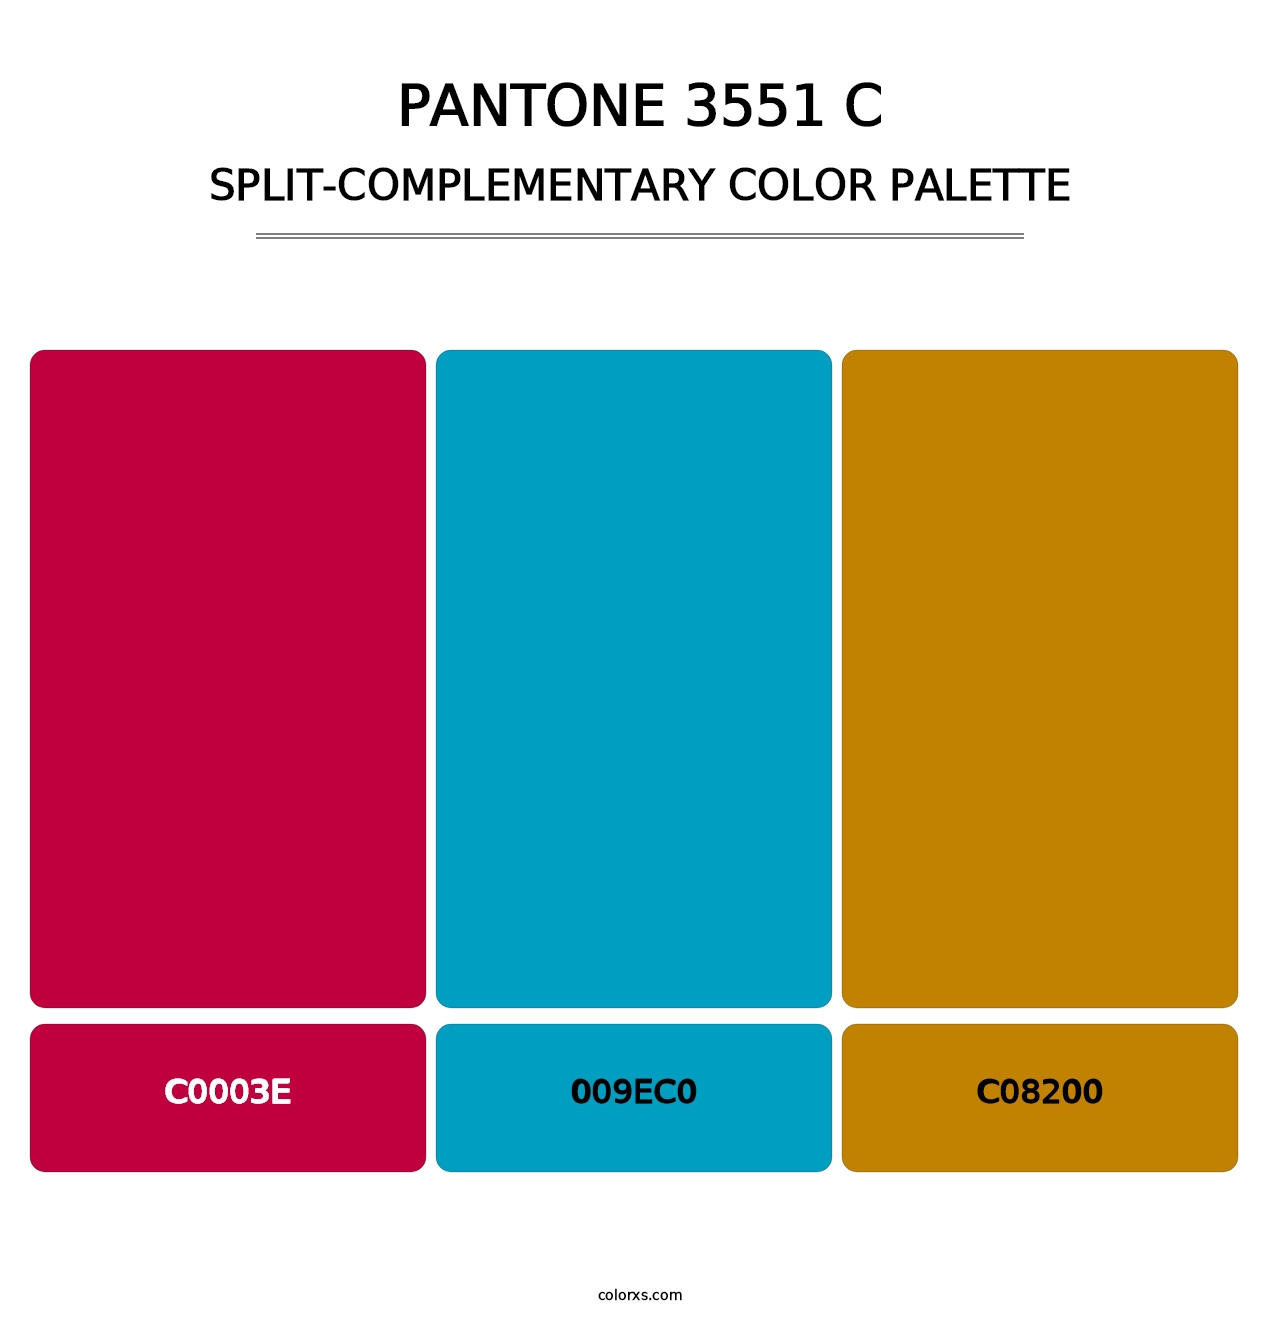 PANTONE 3551 C - Split-Complementary Color Palette